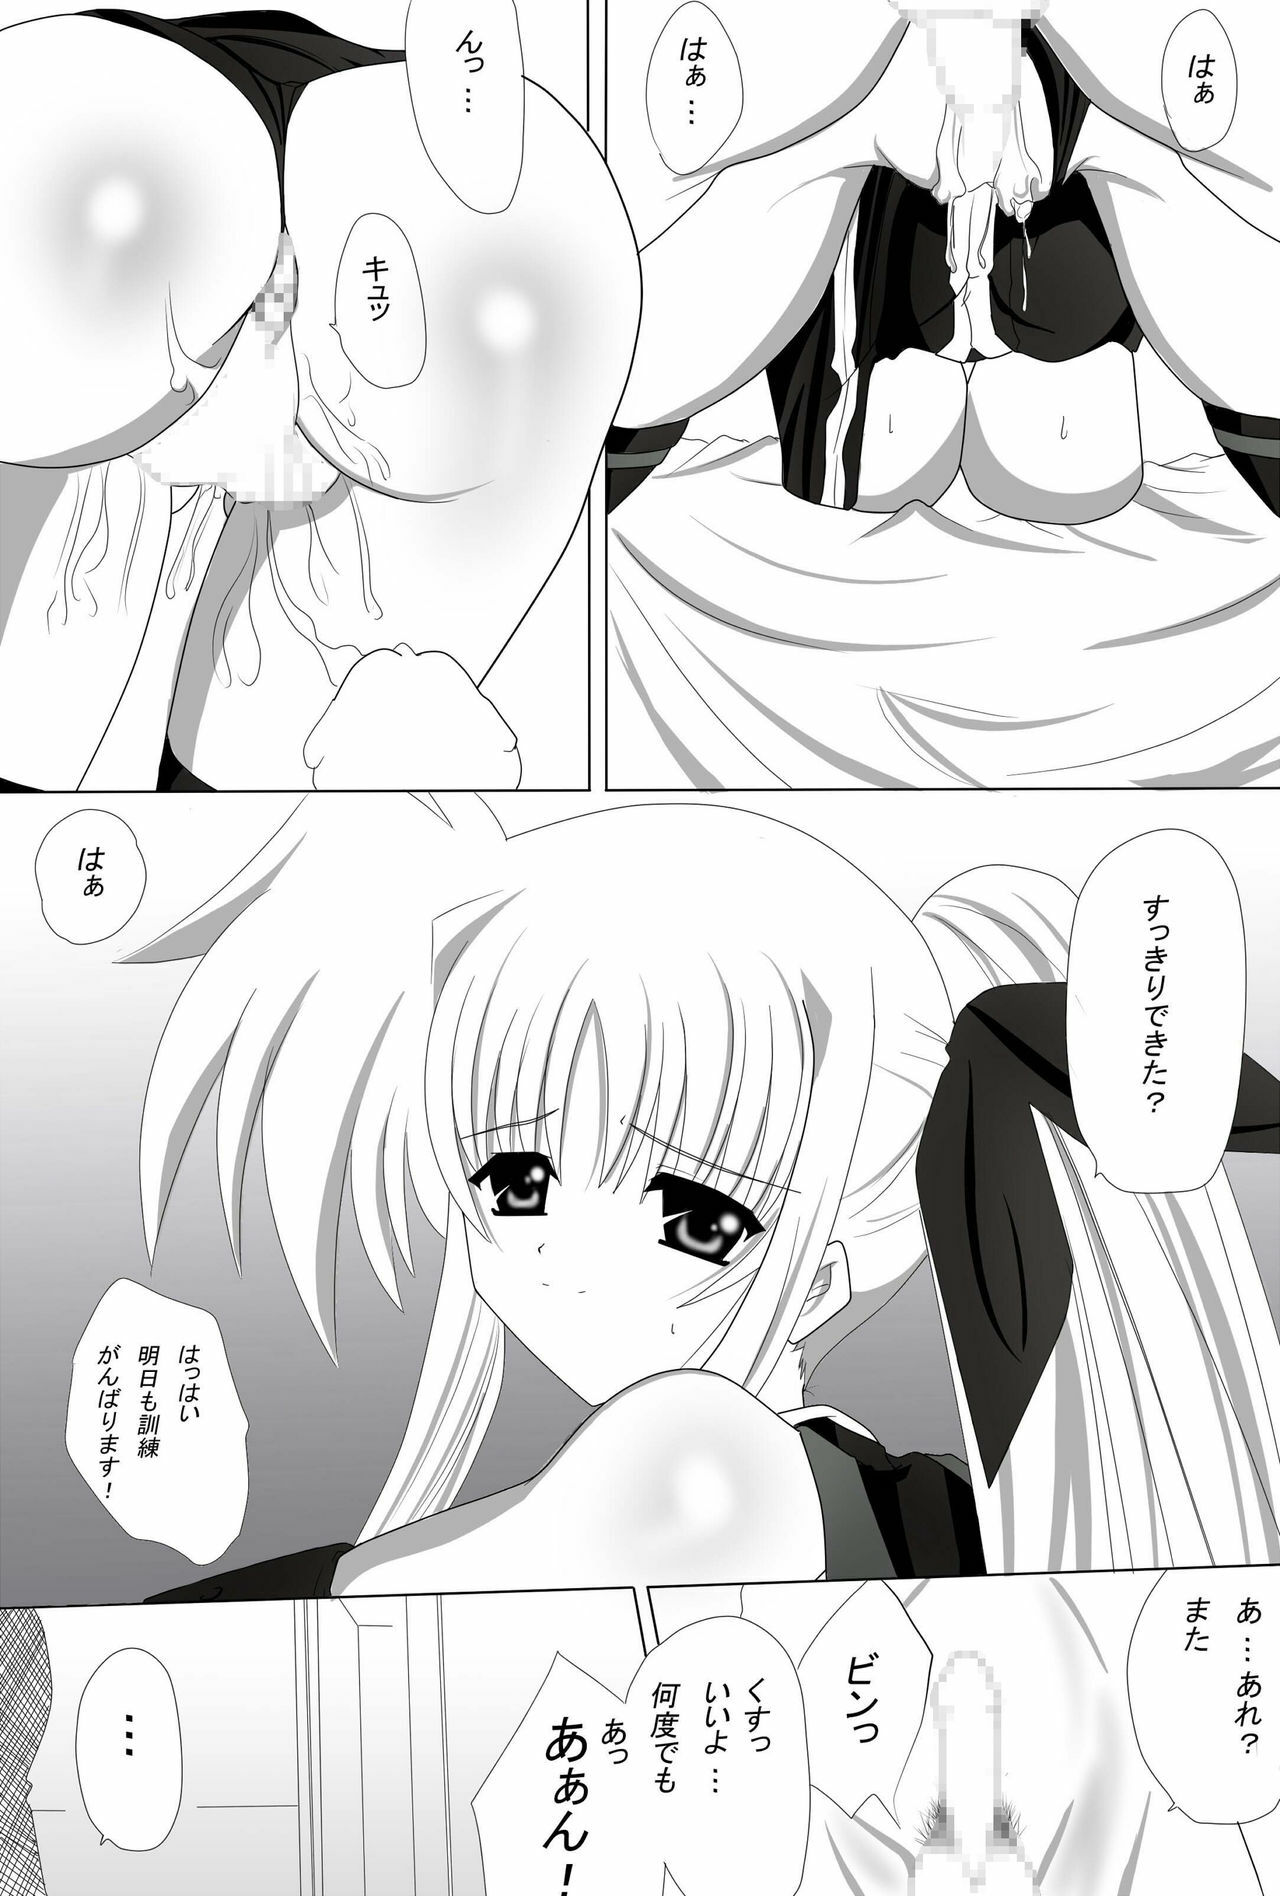 (CT16) [Nekoya (Kuon Kyoushirou)] Fate Salaclously (Mahou Shoujo Lyrical Nanoha) page 20 full